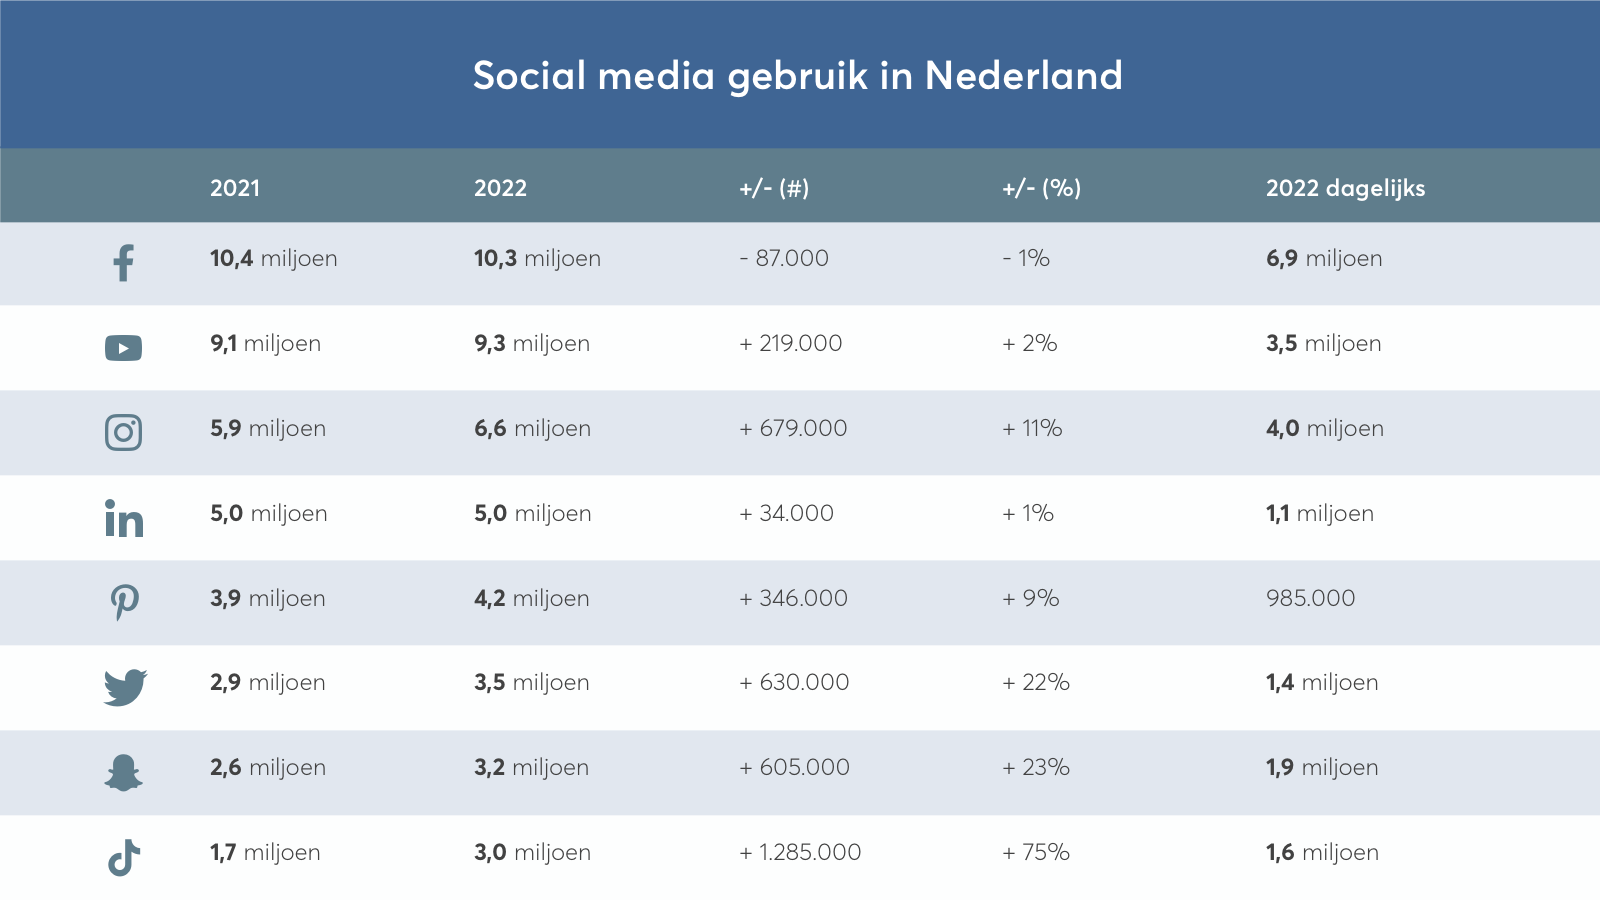 Social media gebruik in Nederland 2021 versus 2022